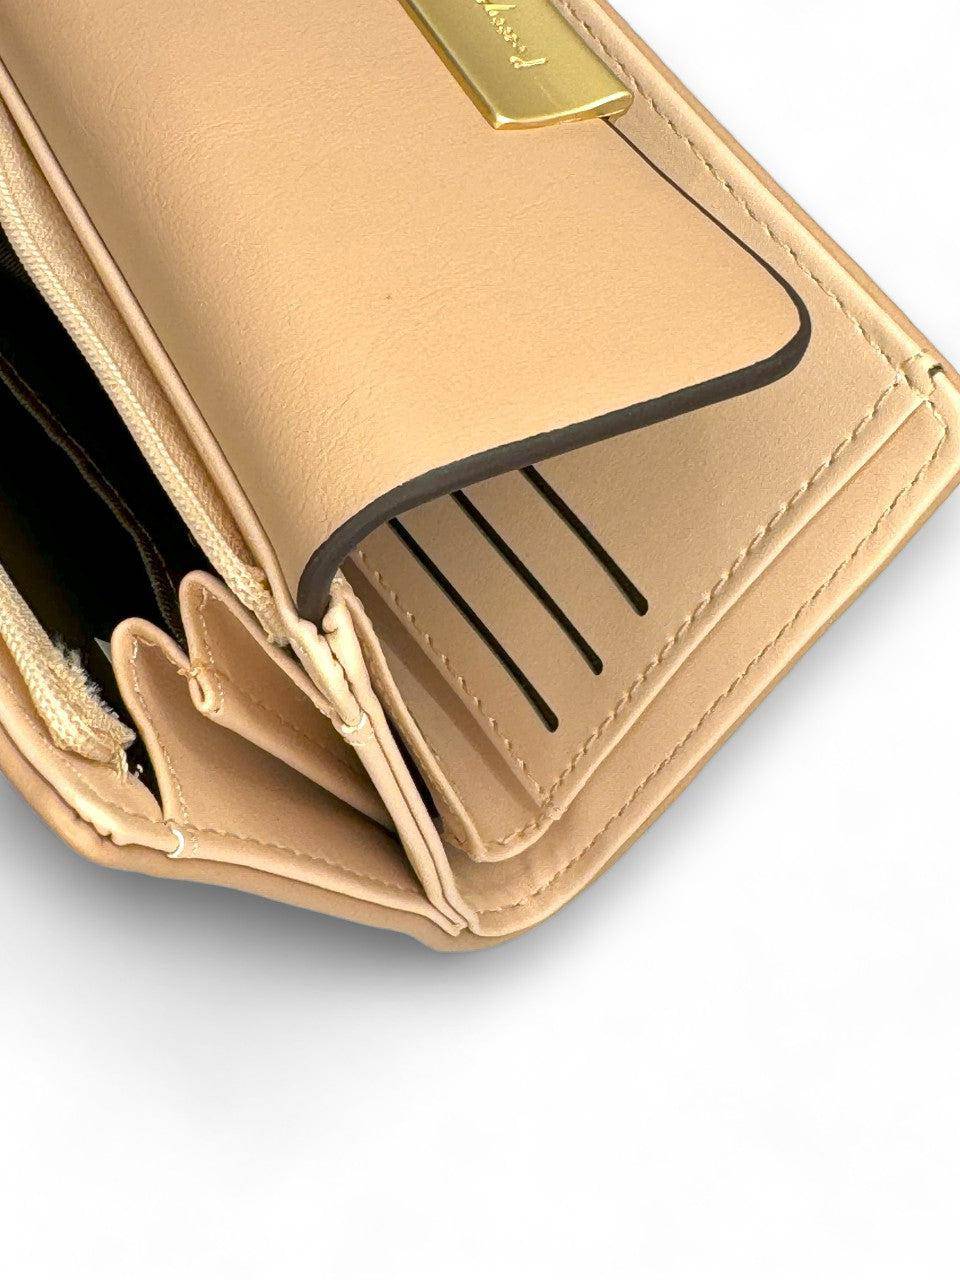 محفظة يد نسائية باللون البيج وبتصميم أنيق ومختلف - KSA